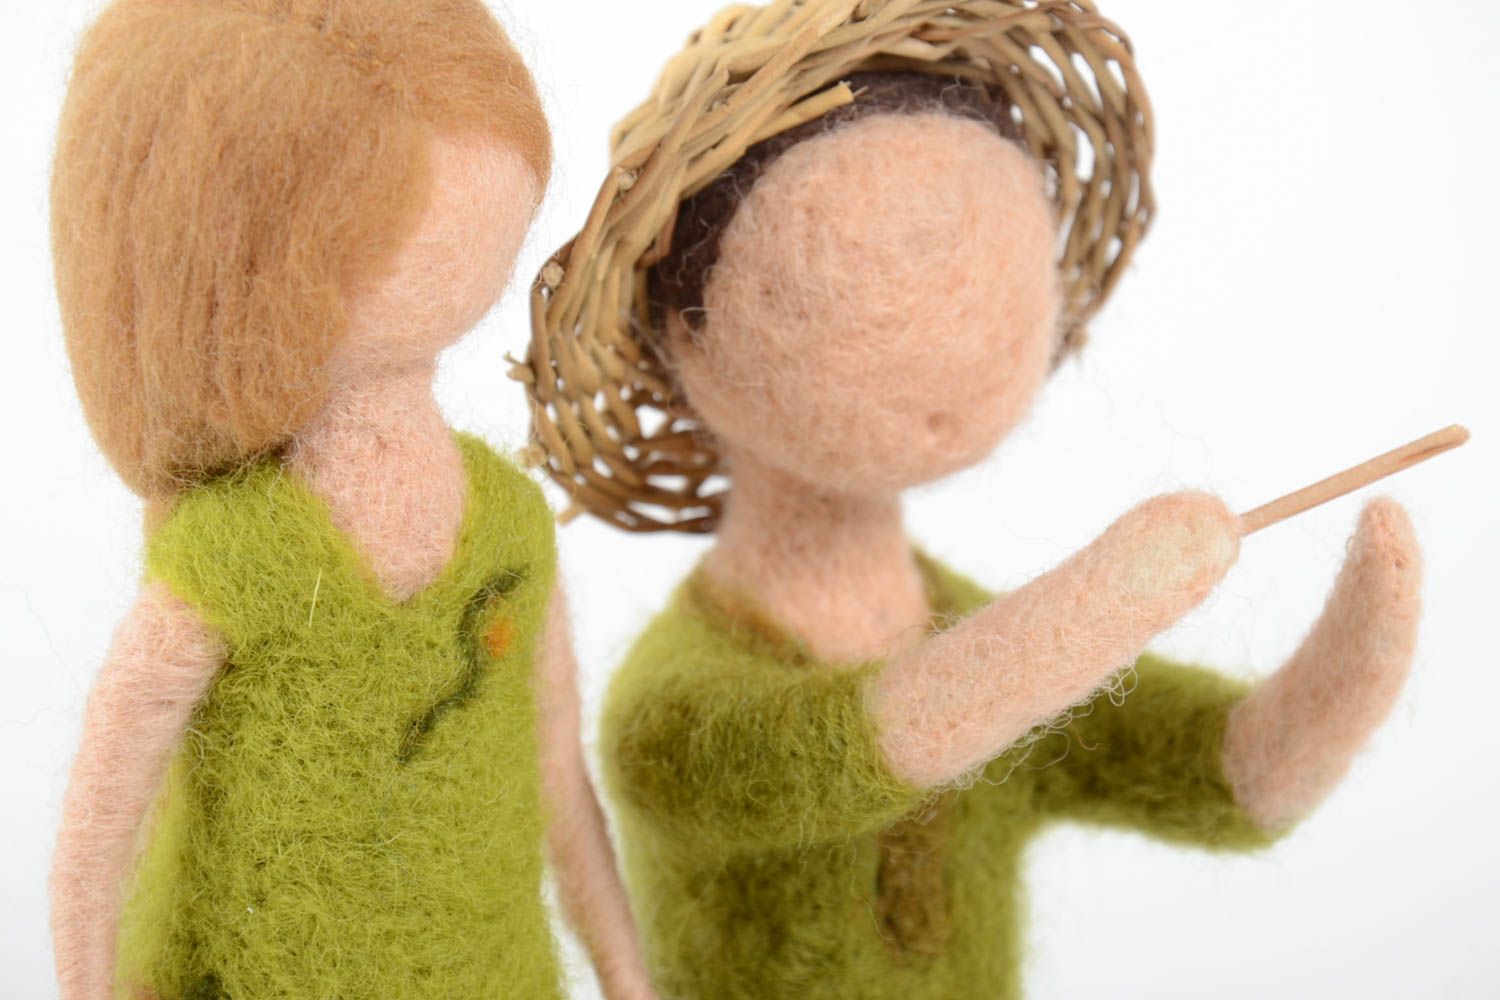 Muñecas artesanales de lana juguetes para decorar la casa regalo para niñas foto 4